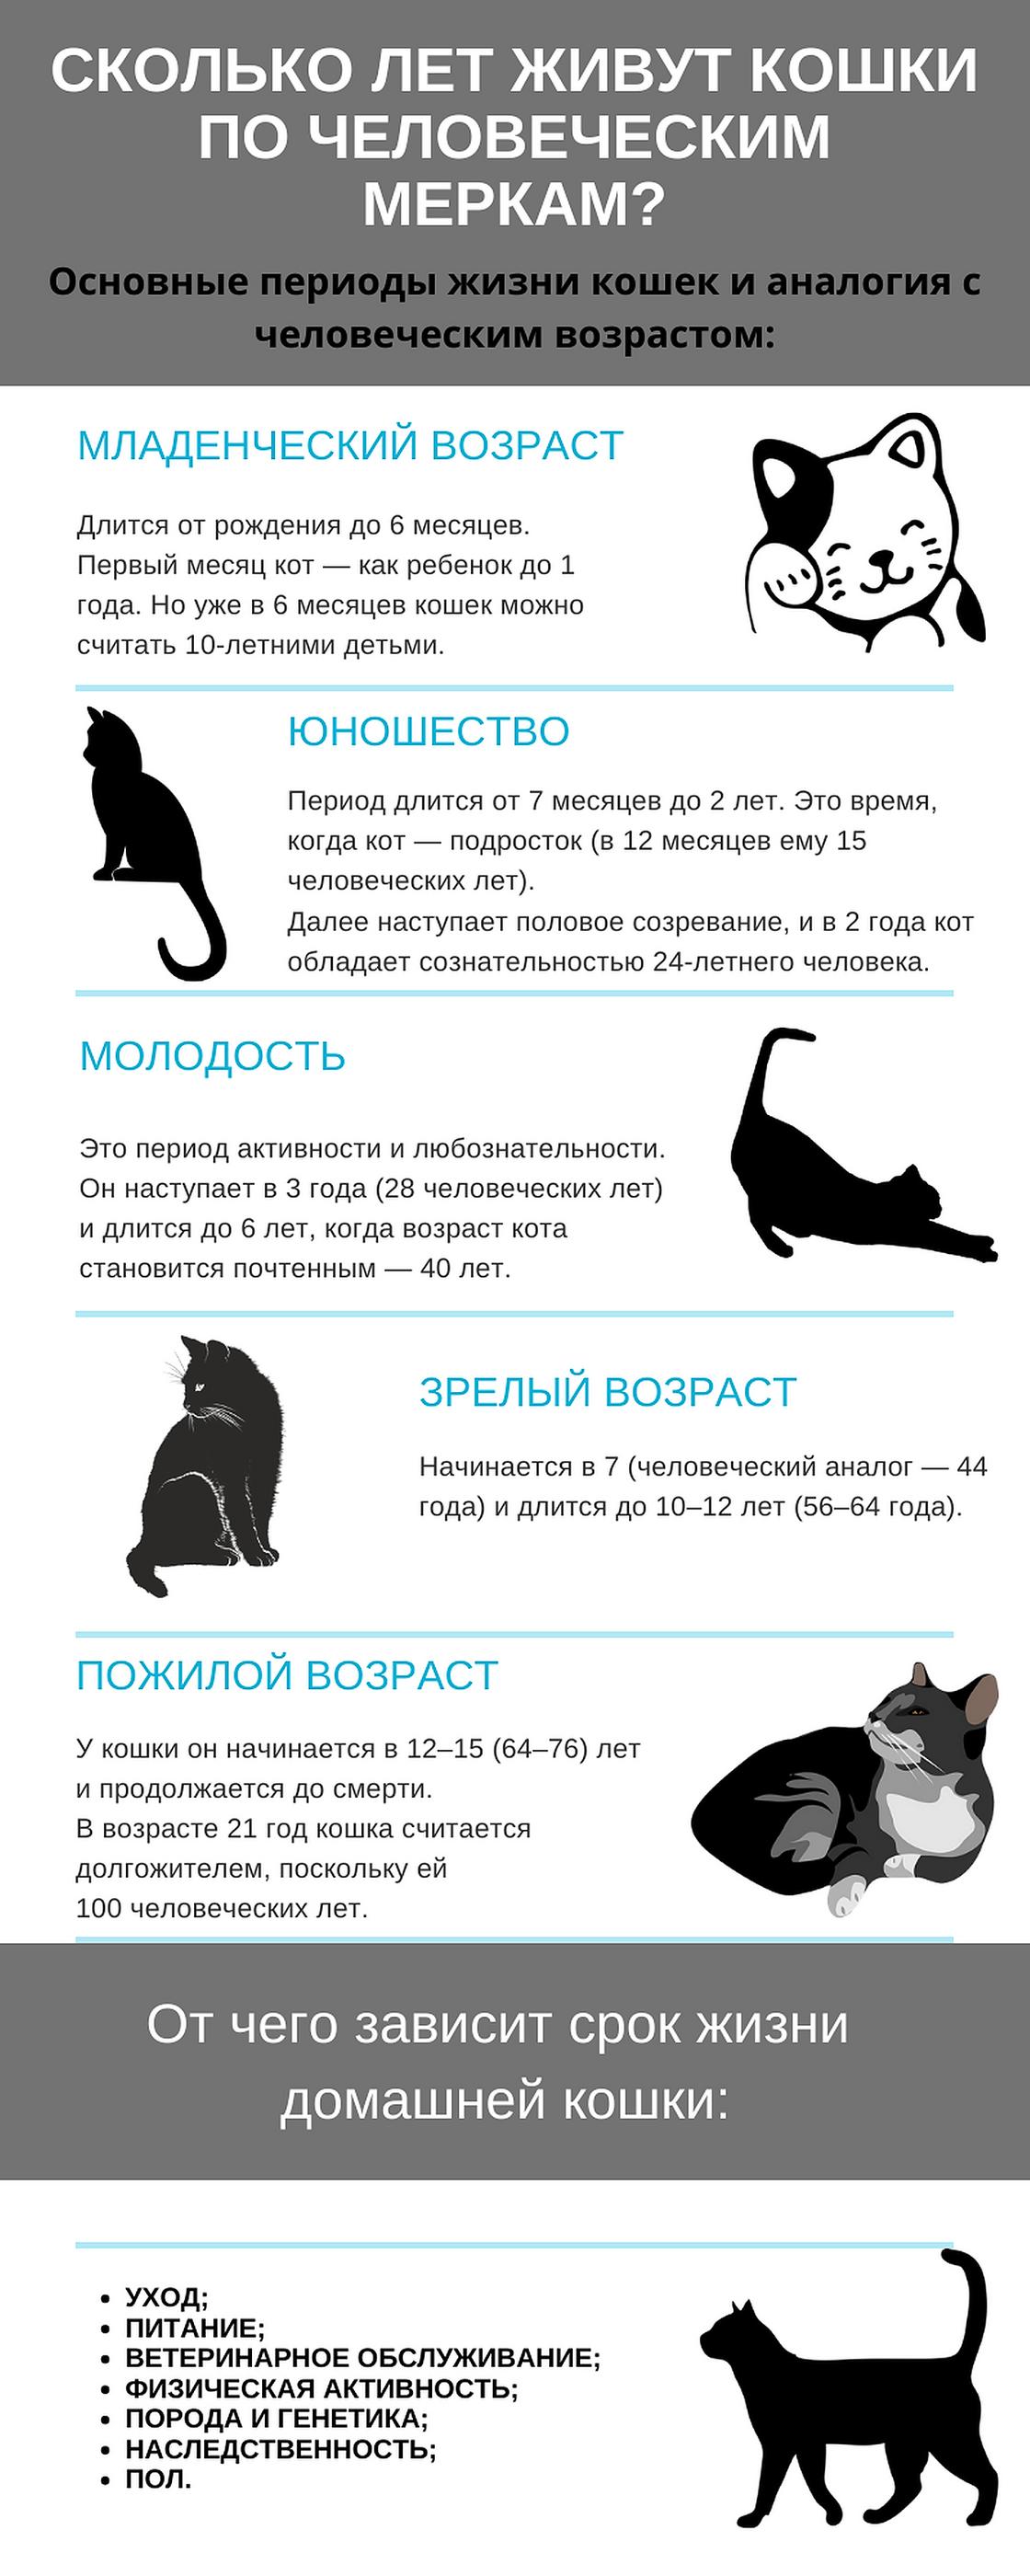 Графическая схема с основными периодами жизни кошек